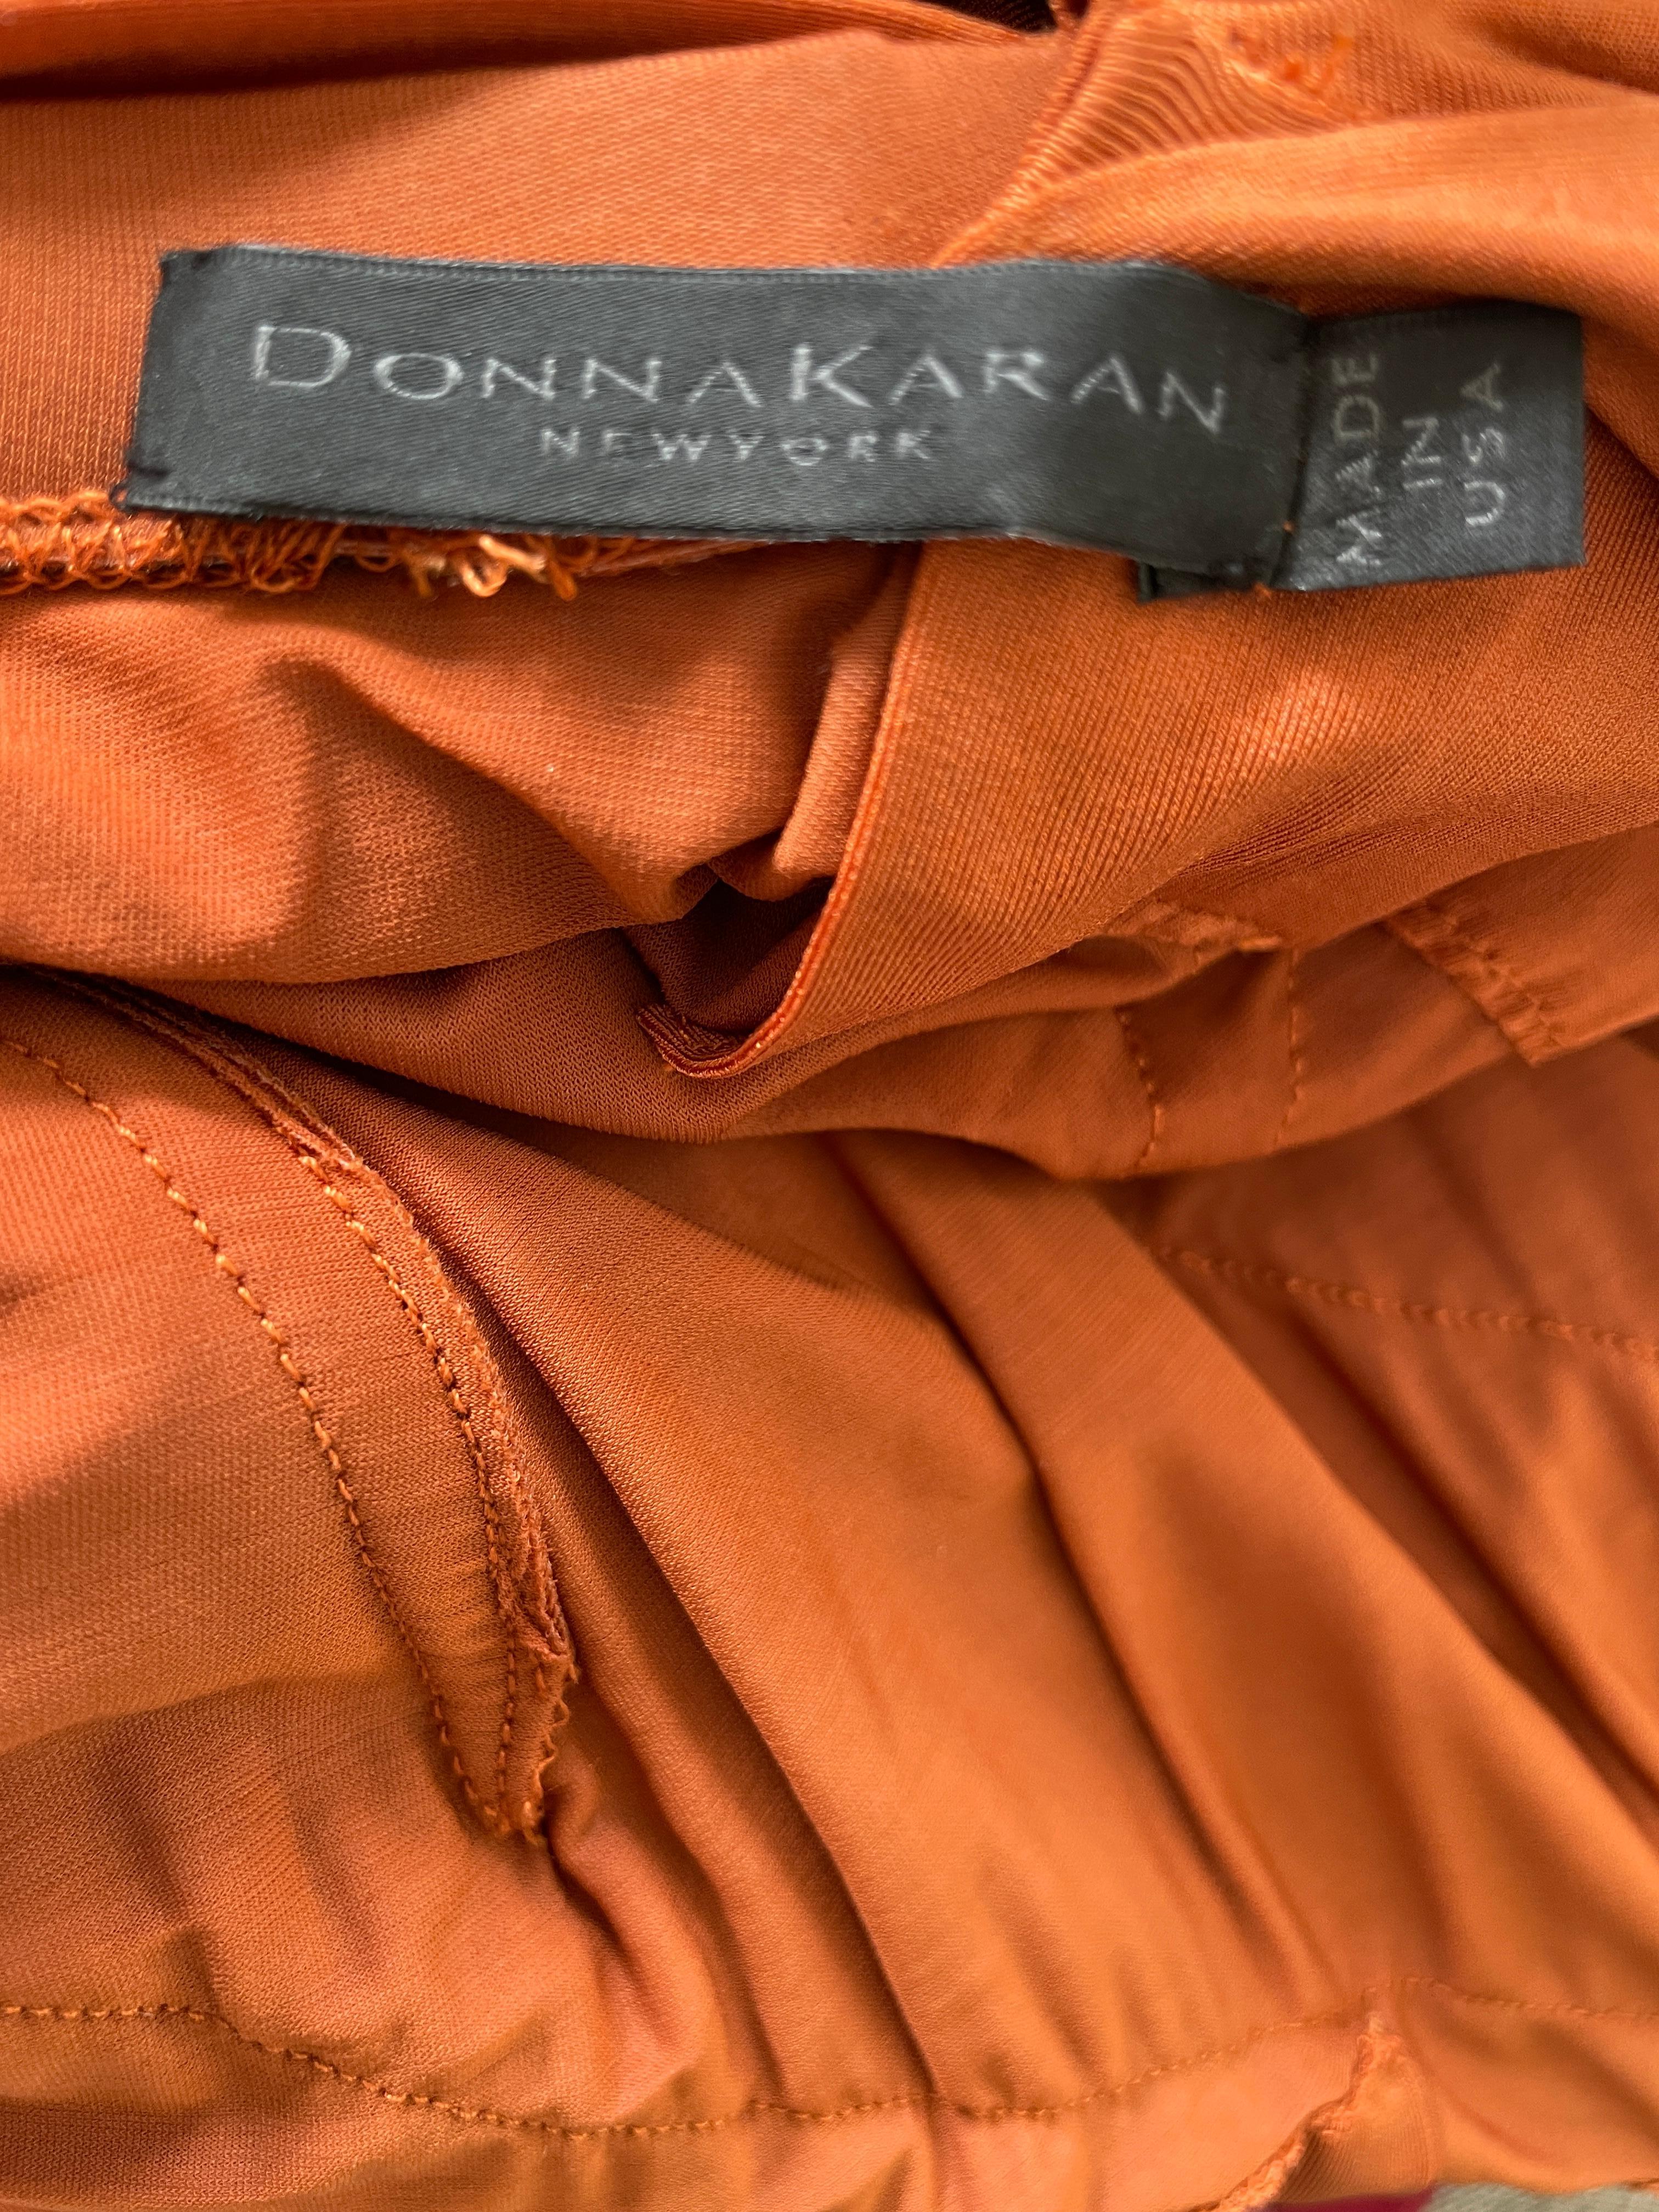 Donna Karan Vintage 1990's Orange Evening Dress with High Side Slit   For Sale 5